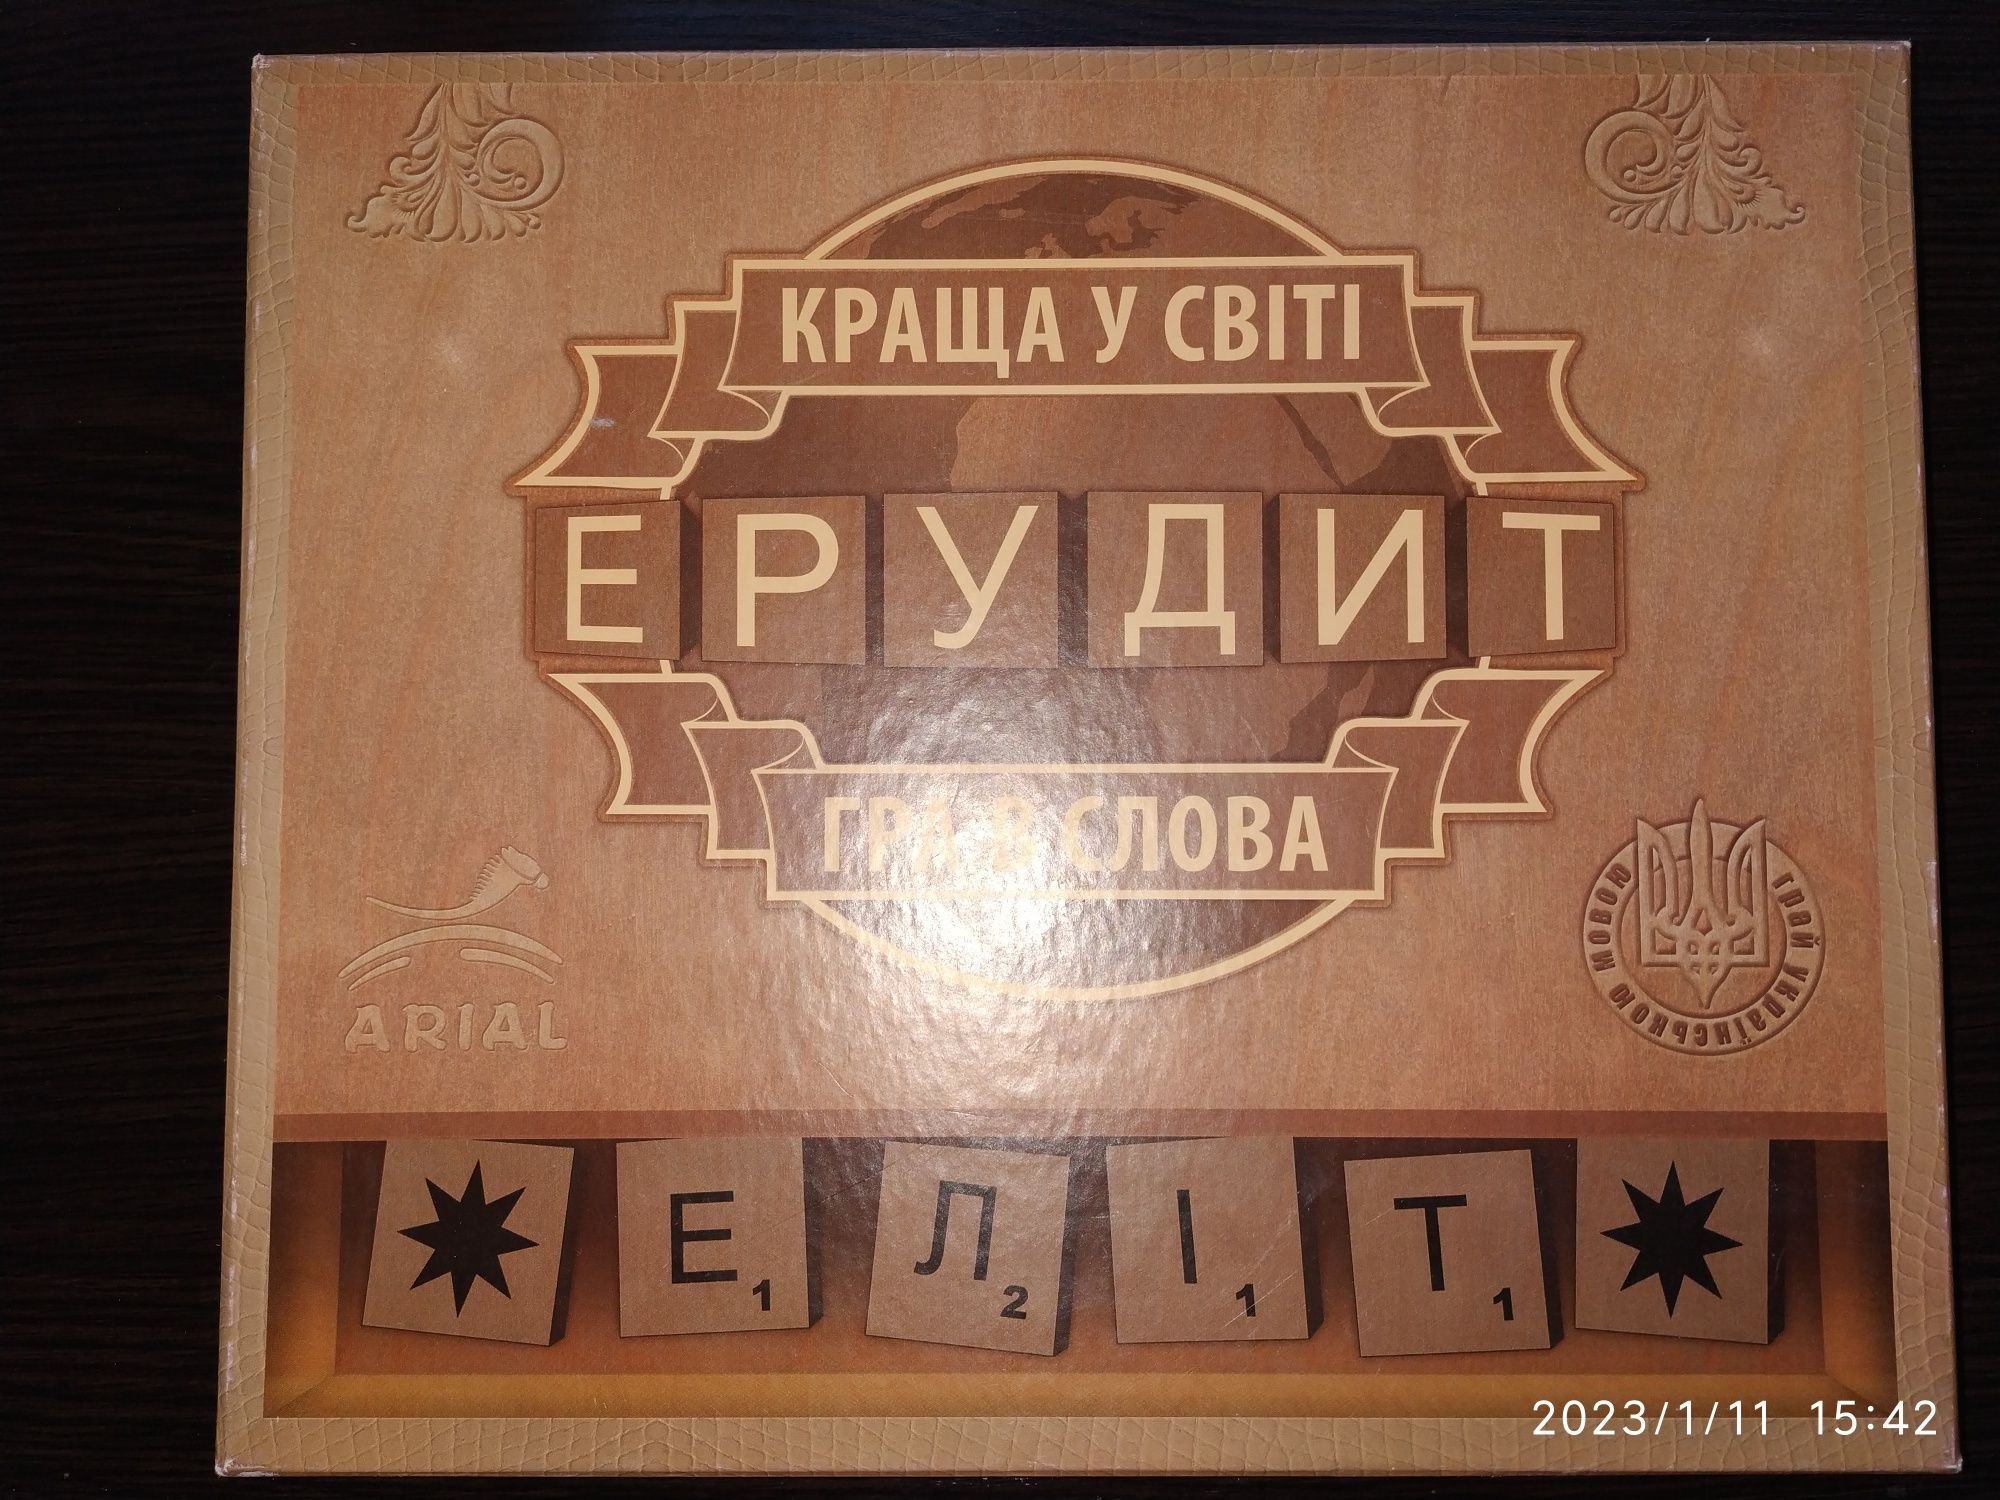 Игра Ерудит на укр. языке, в прекрасном состоянии